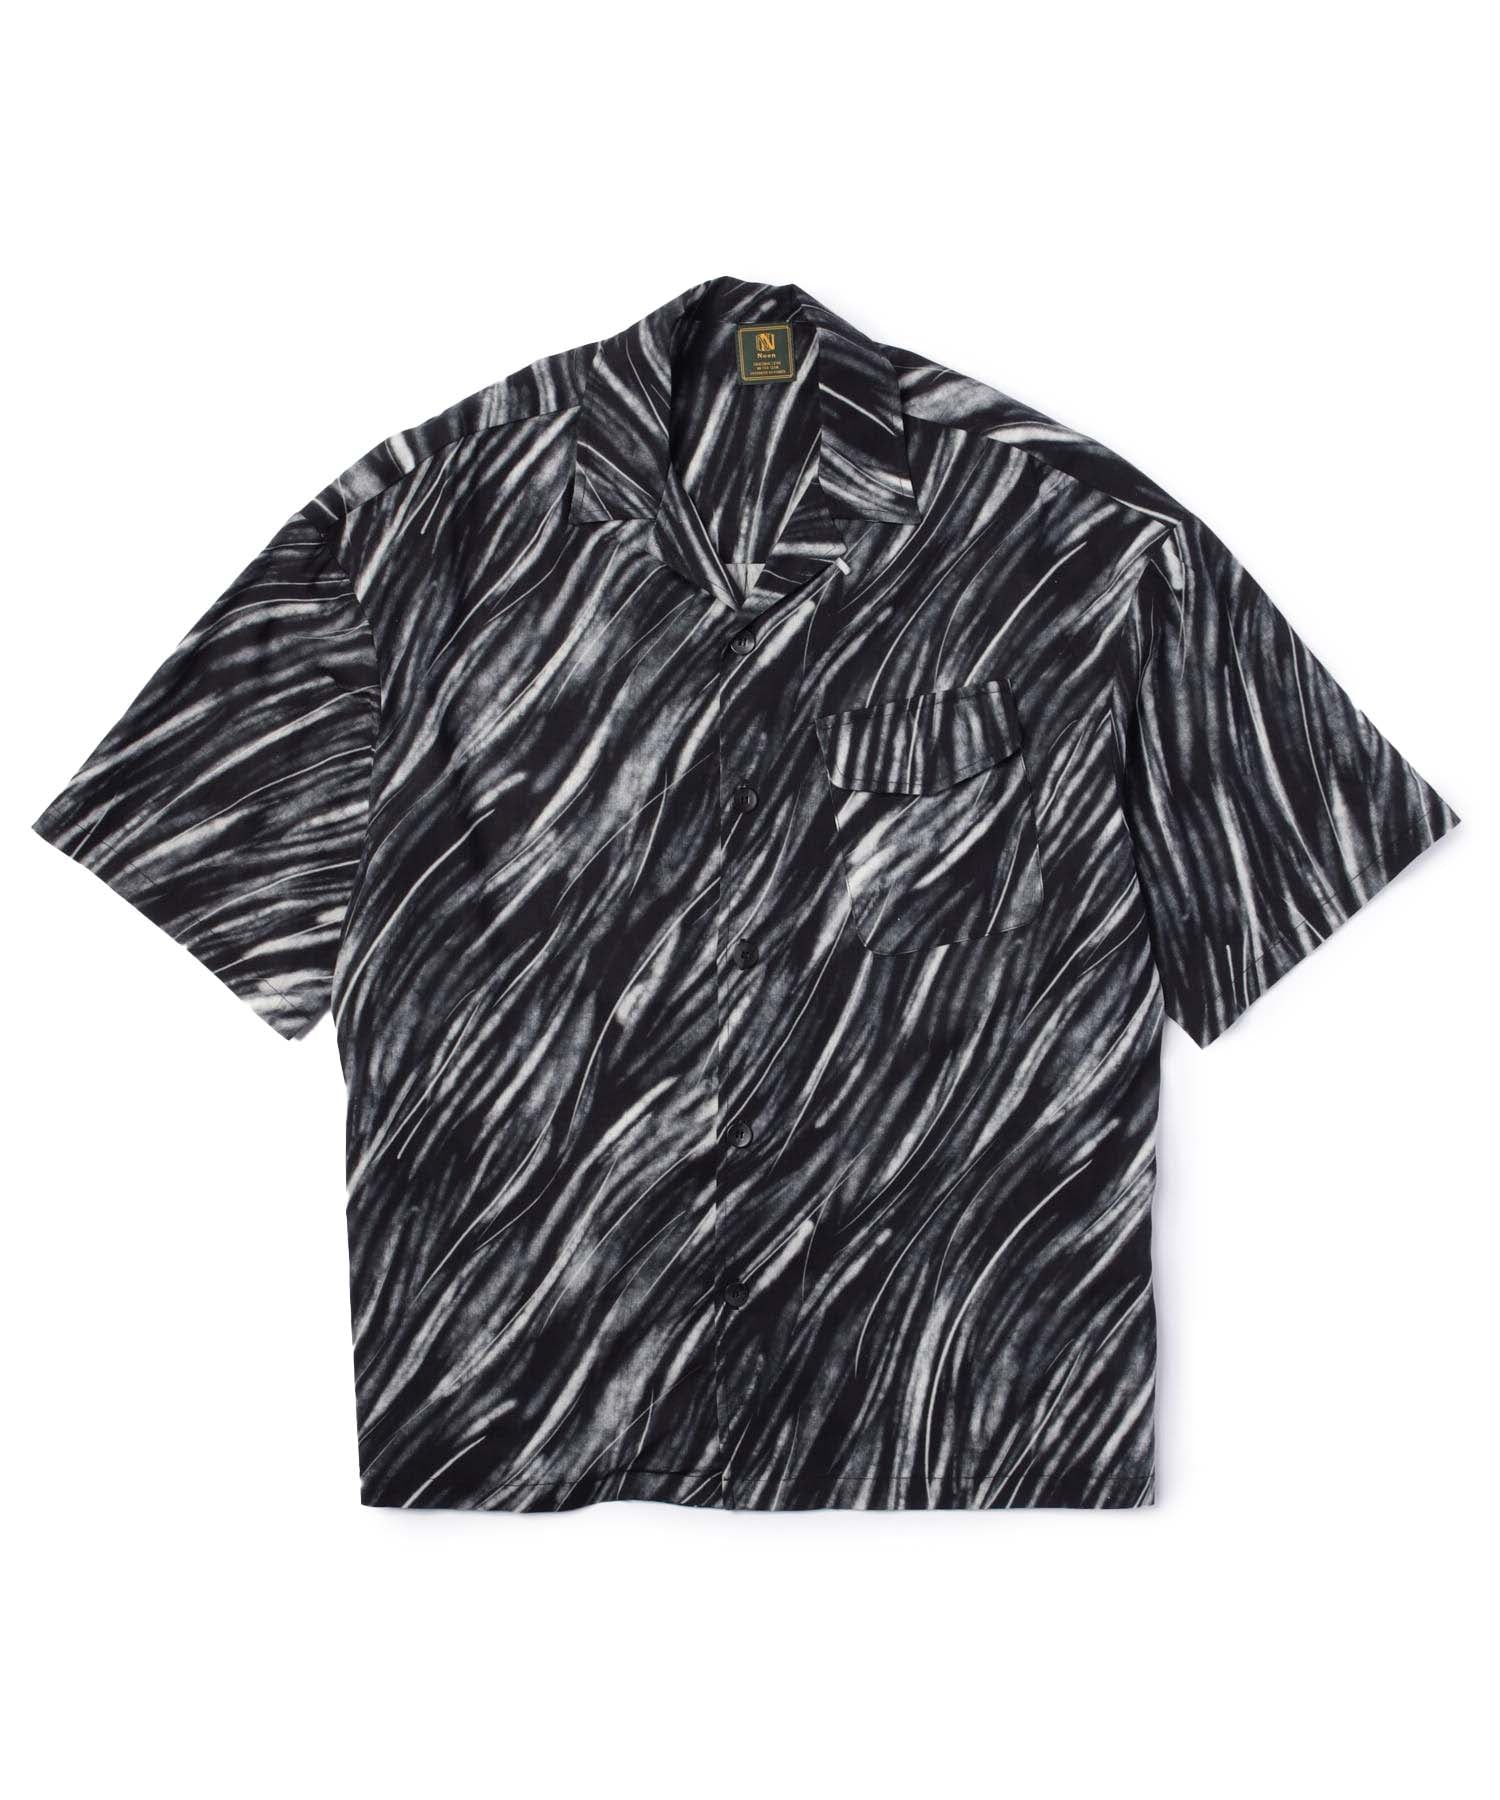 パターンオープンカラーシャツ[Black]